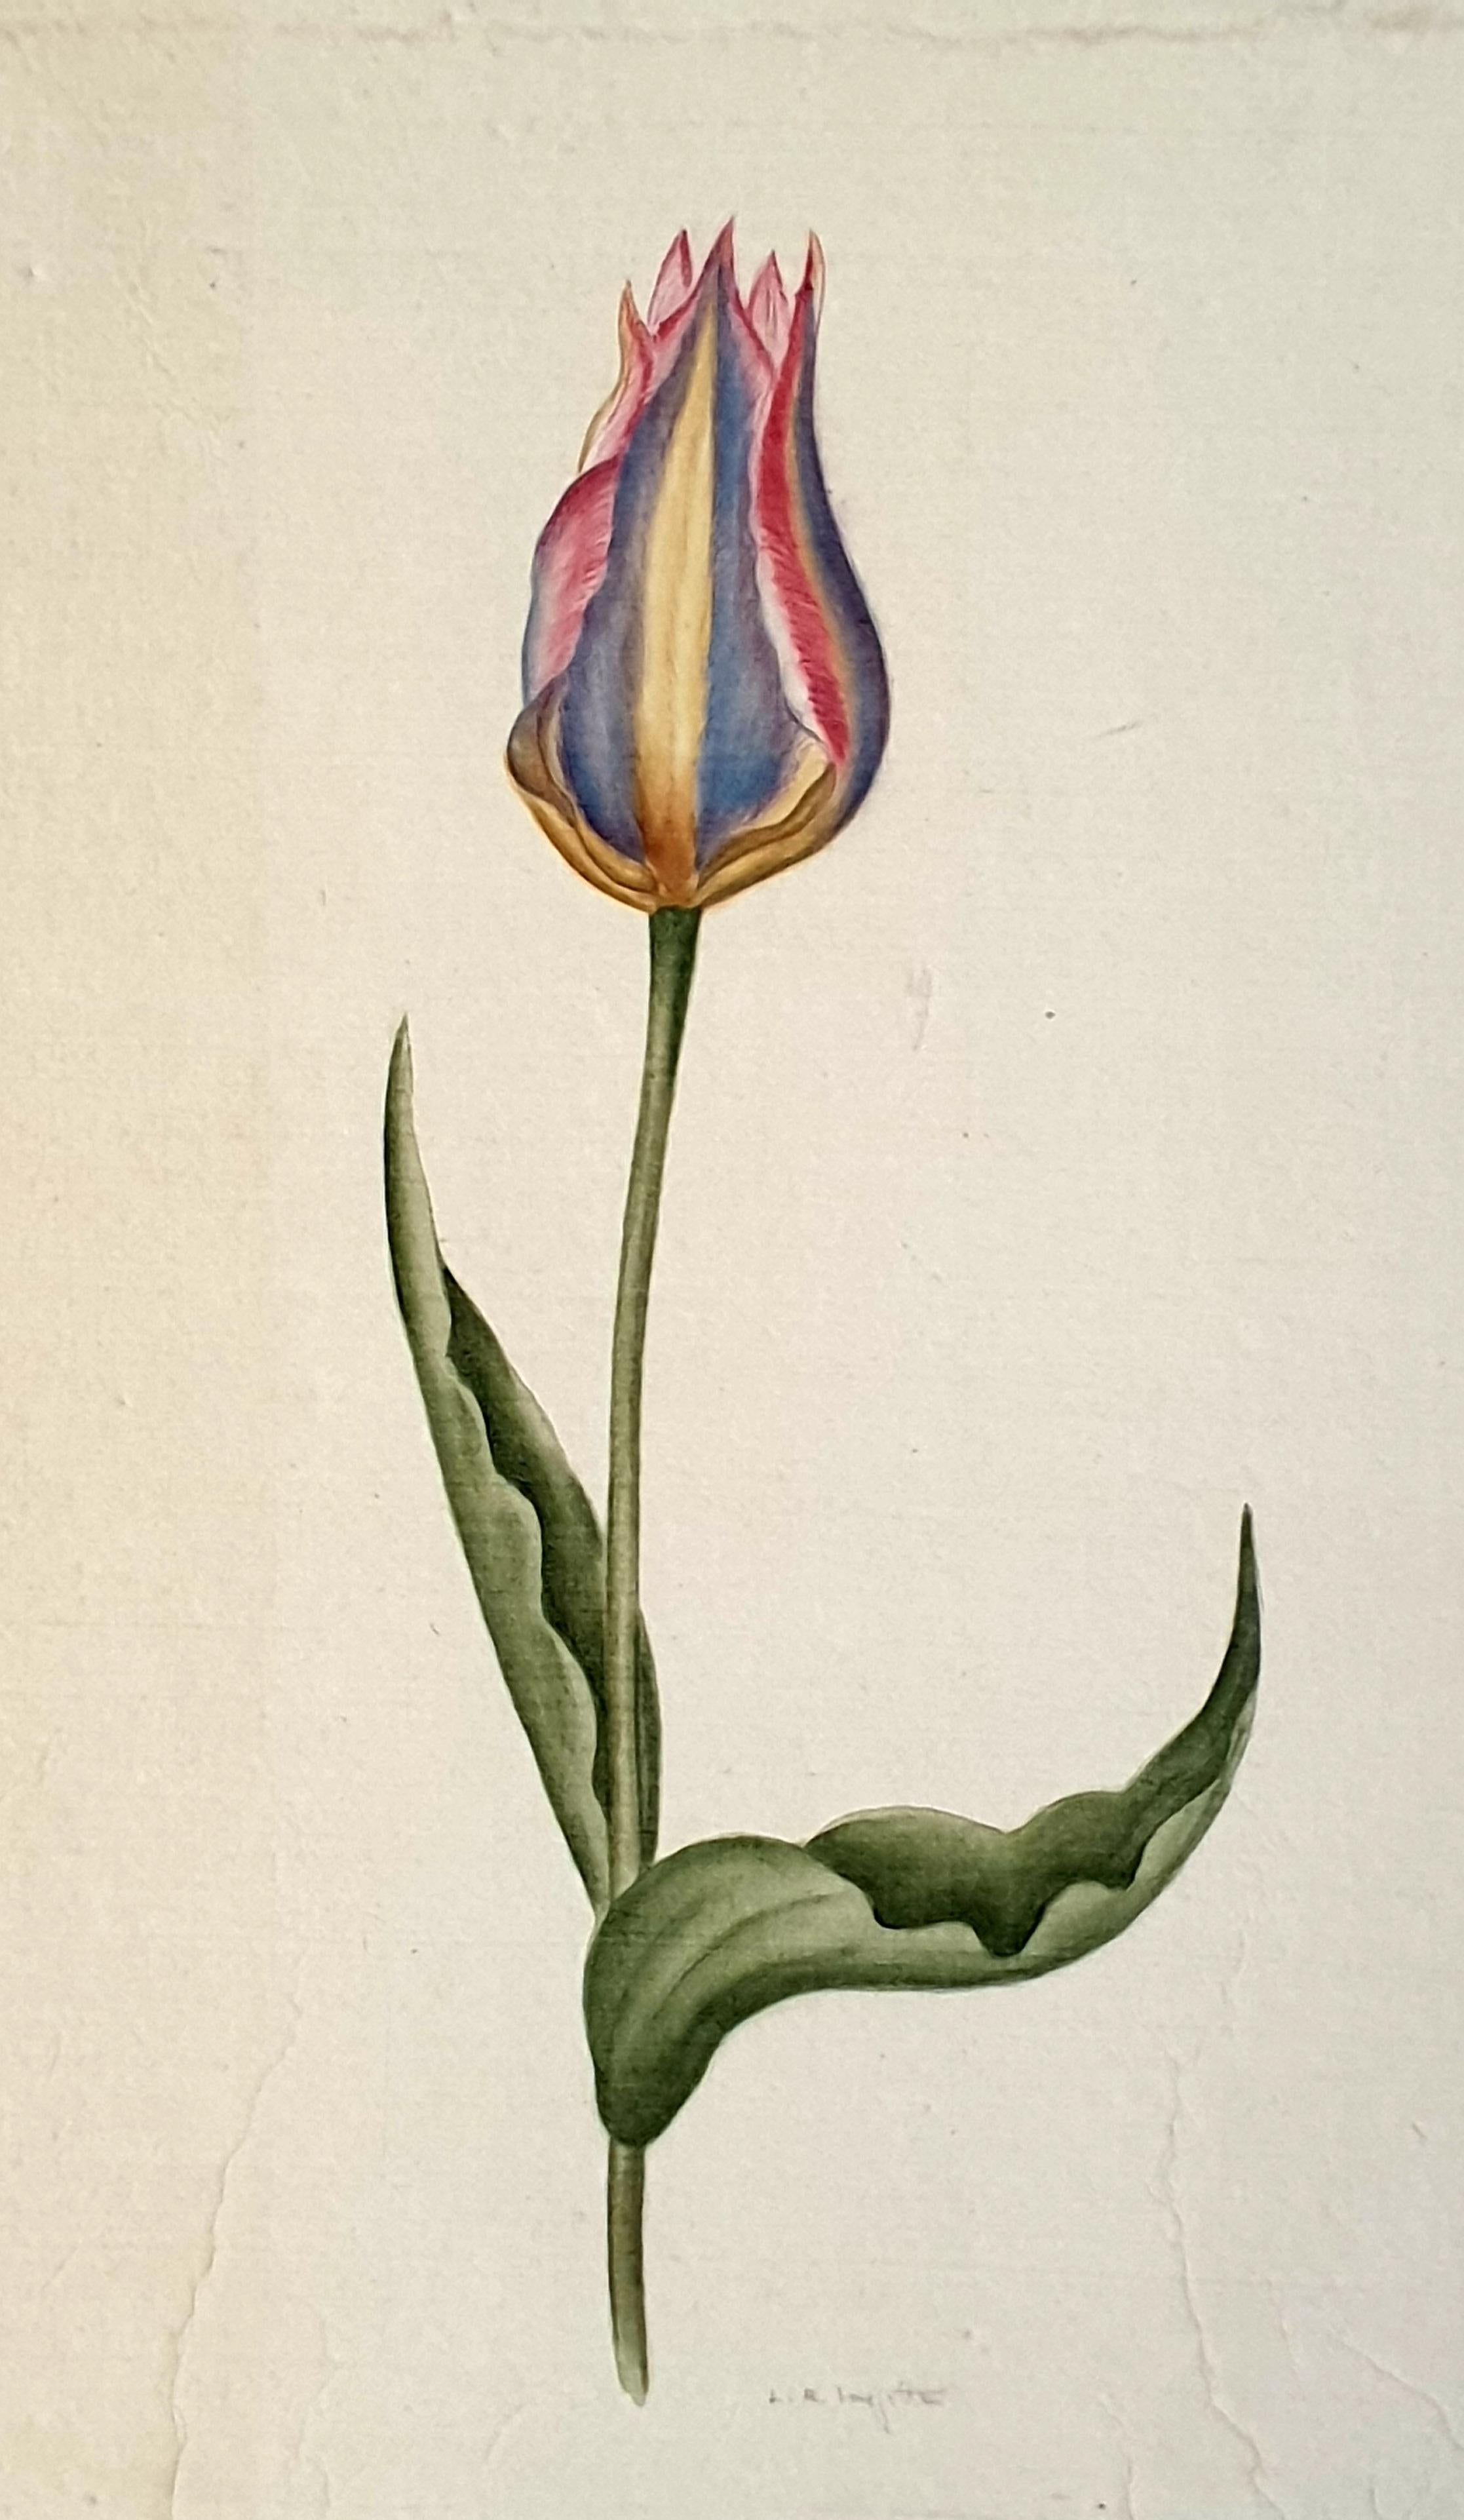 Études botaniques, aquarelles sur soie sur papier fait main, ensemble de trois tulipes - Art de La Roche Laffitte